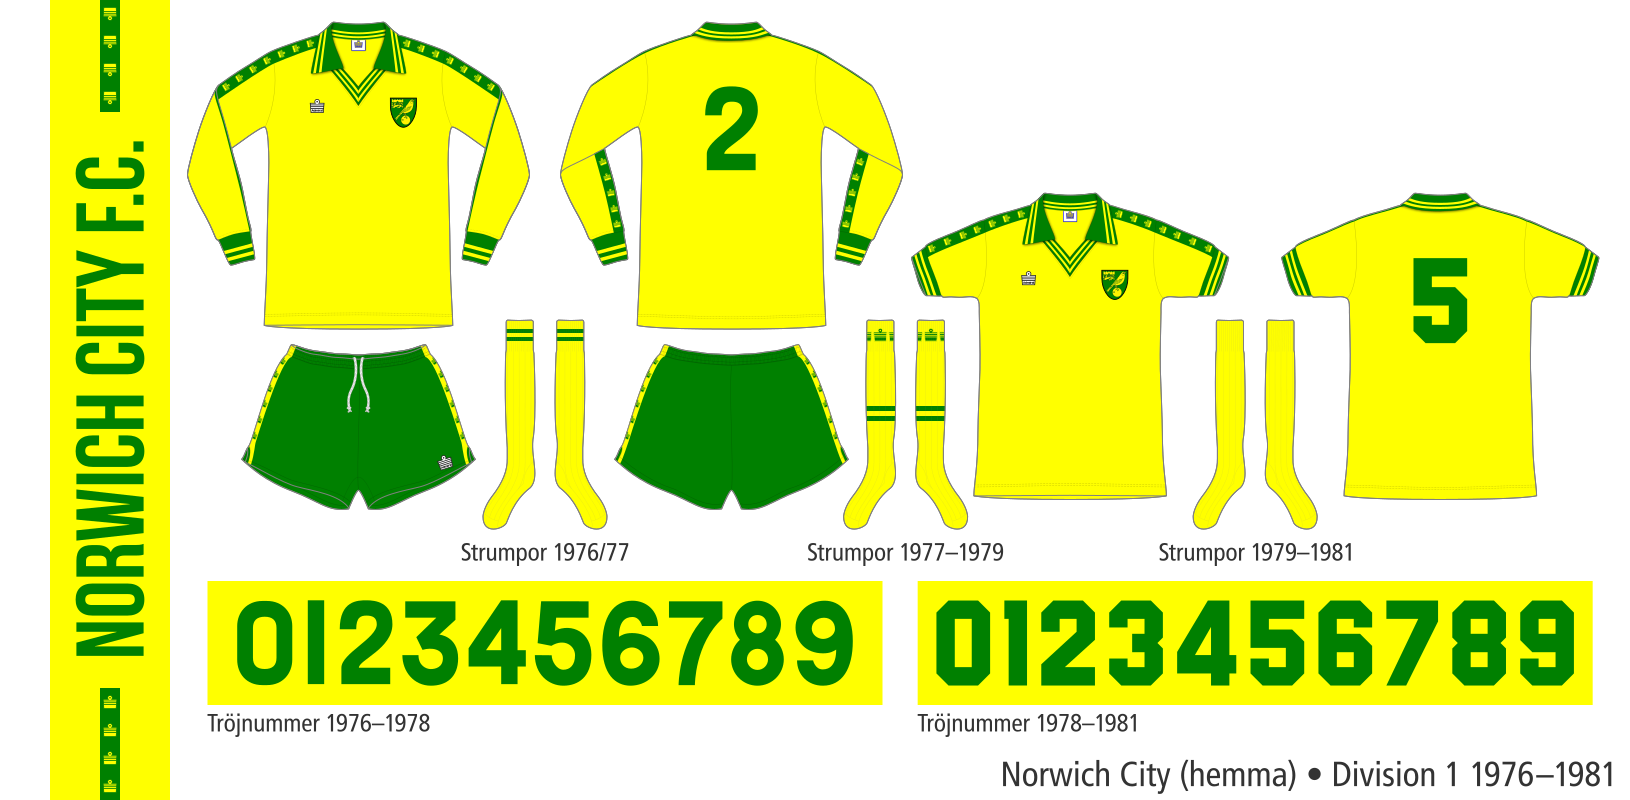 Norwich City 1976–1981 (hemma)